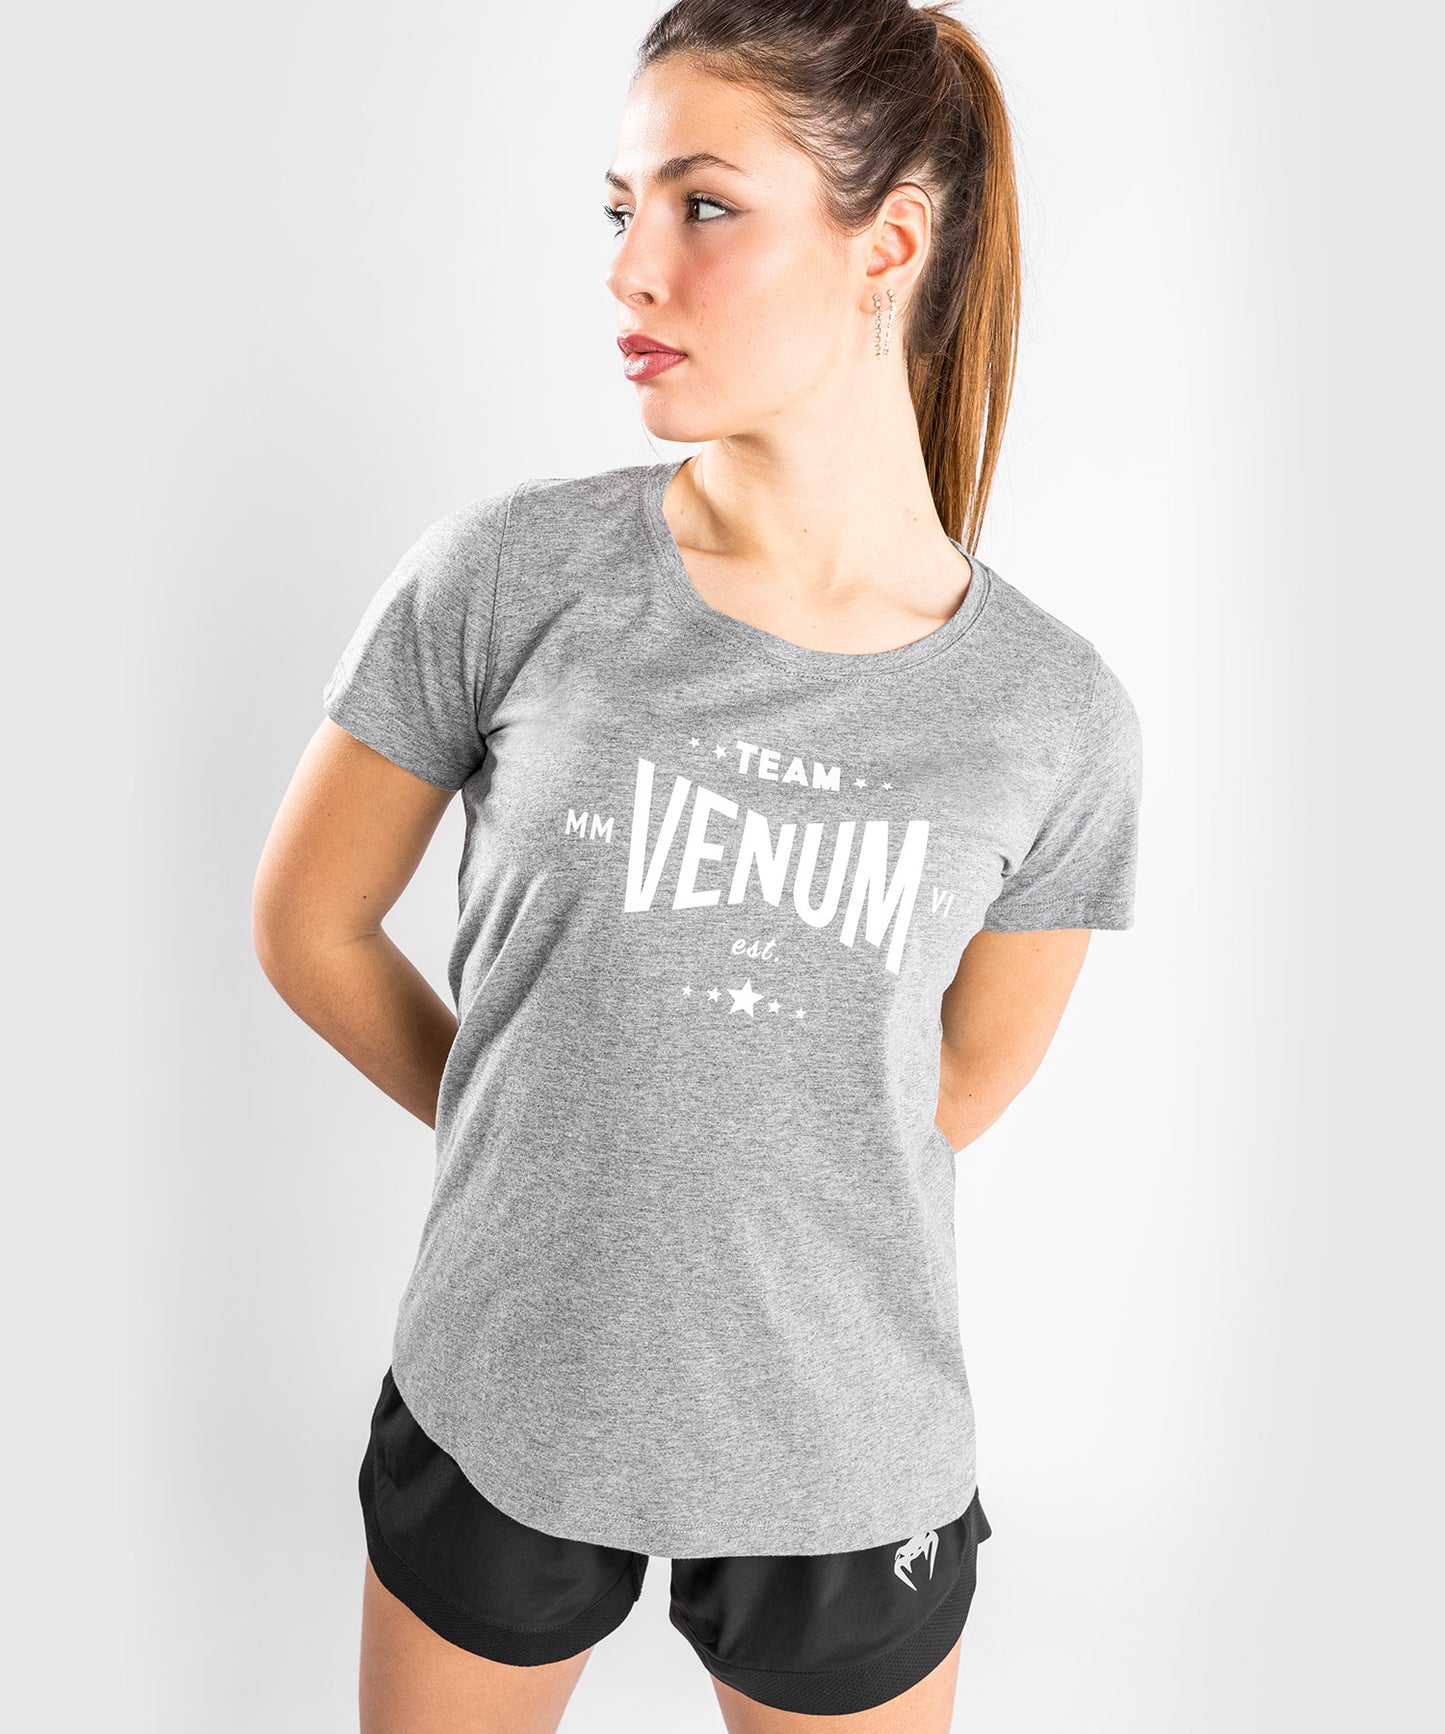 Maglietta Venum Team 2.0 - Donna - Griego Erica Chiaro